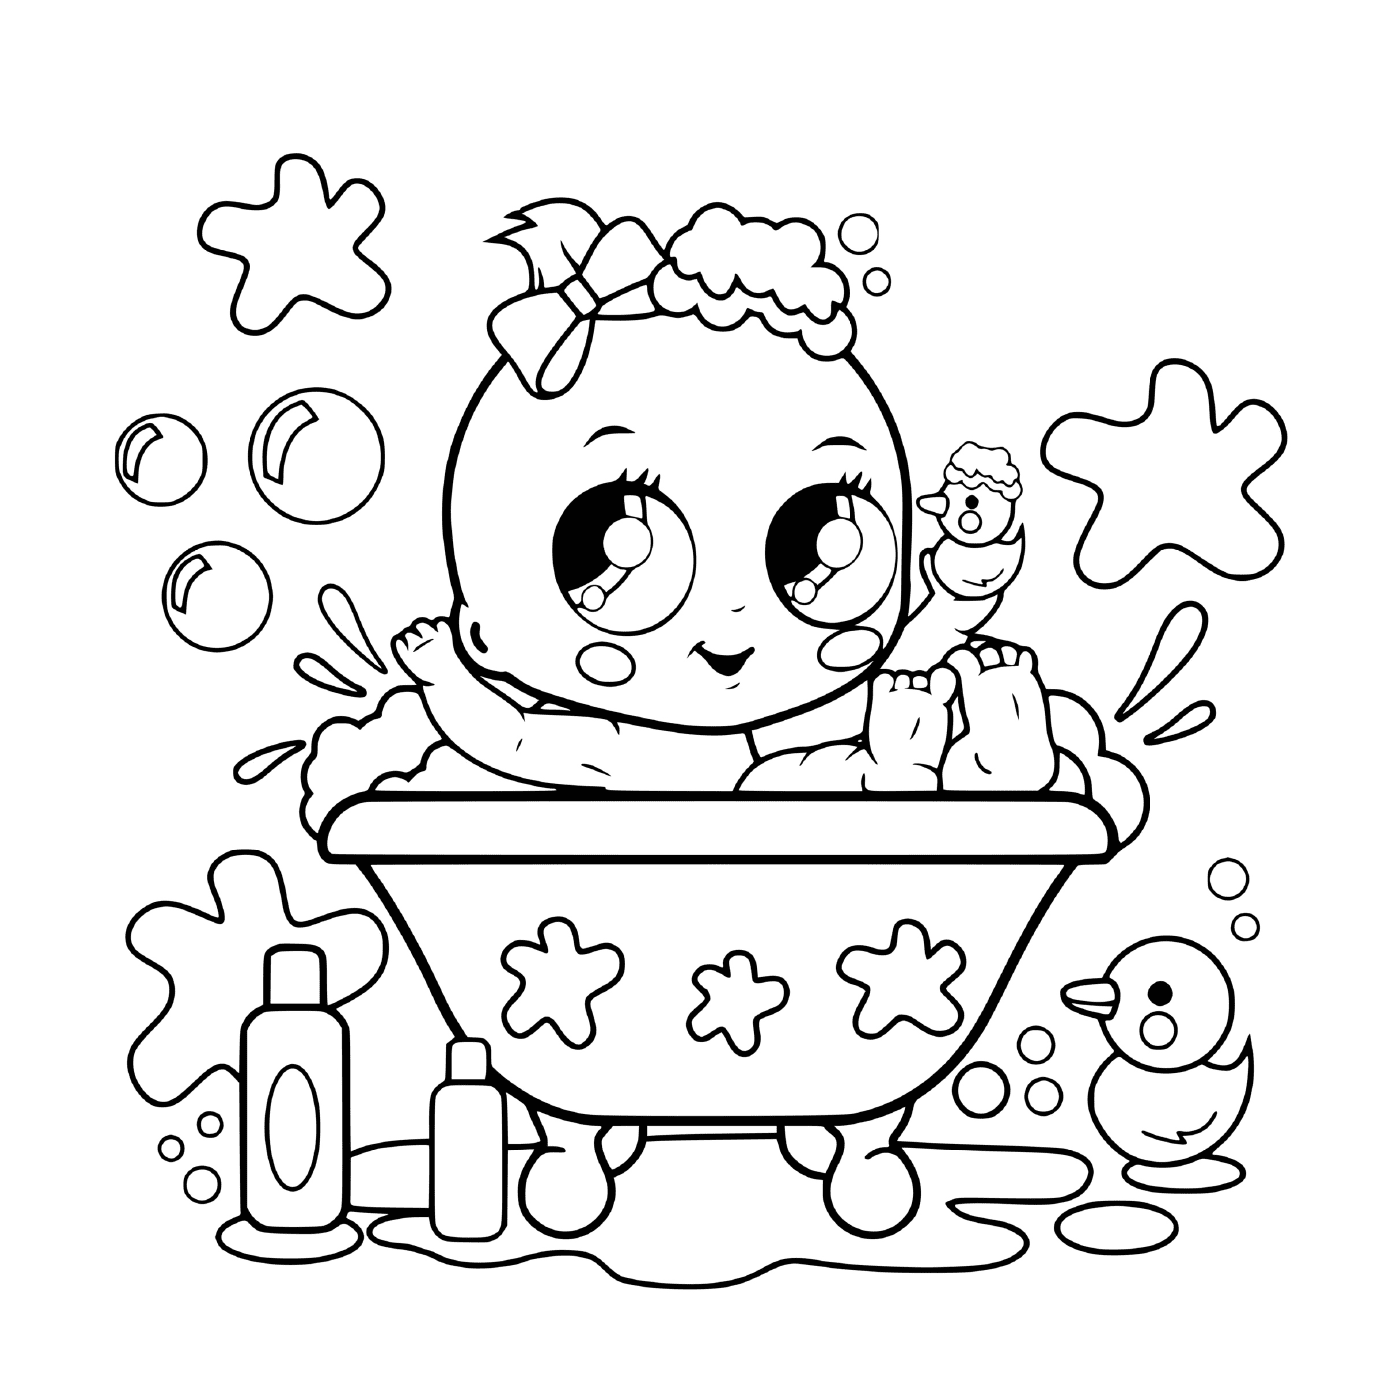  A baby in a bathtub 